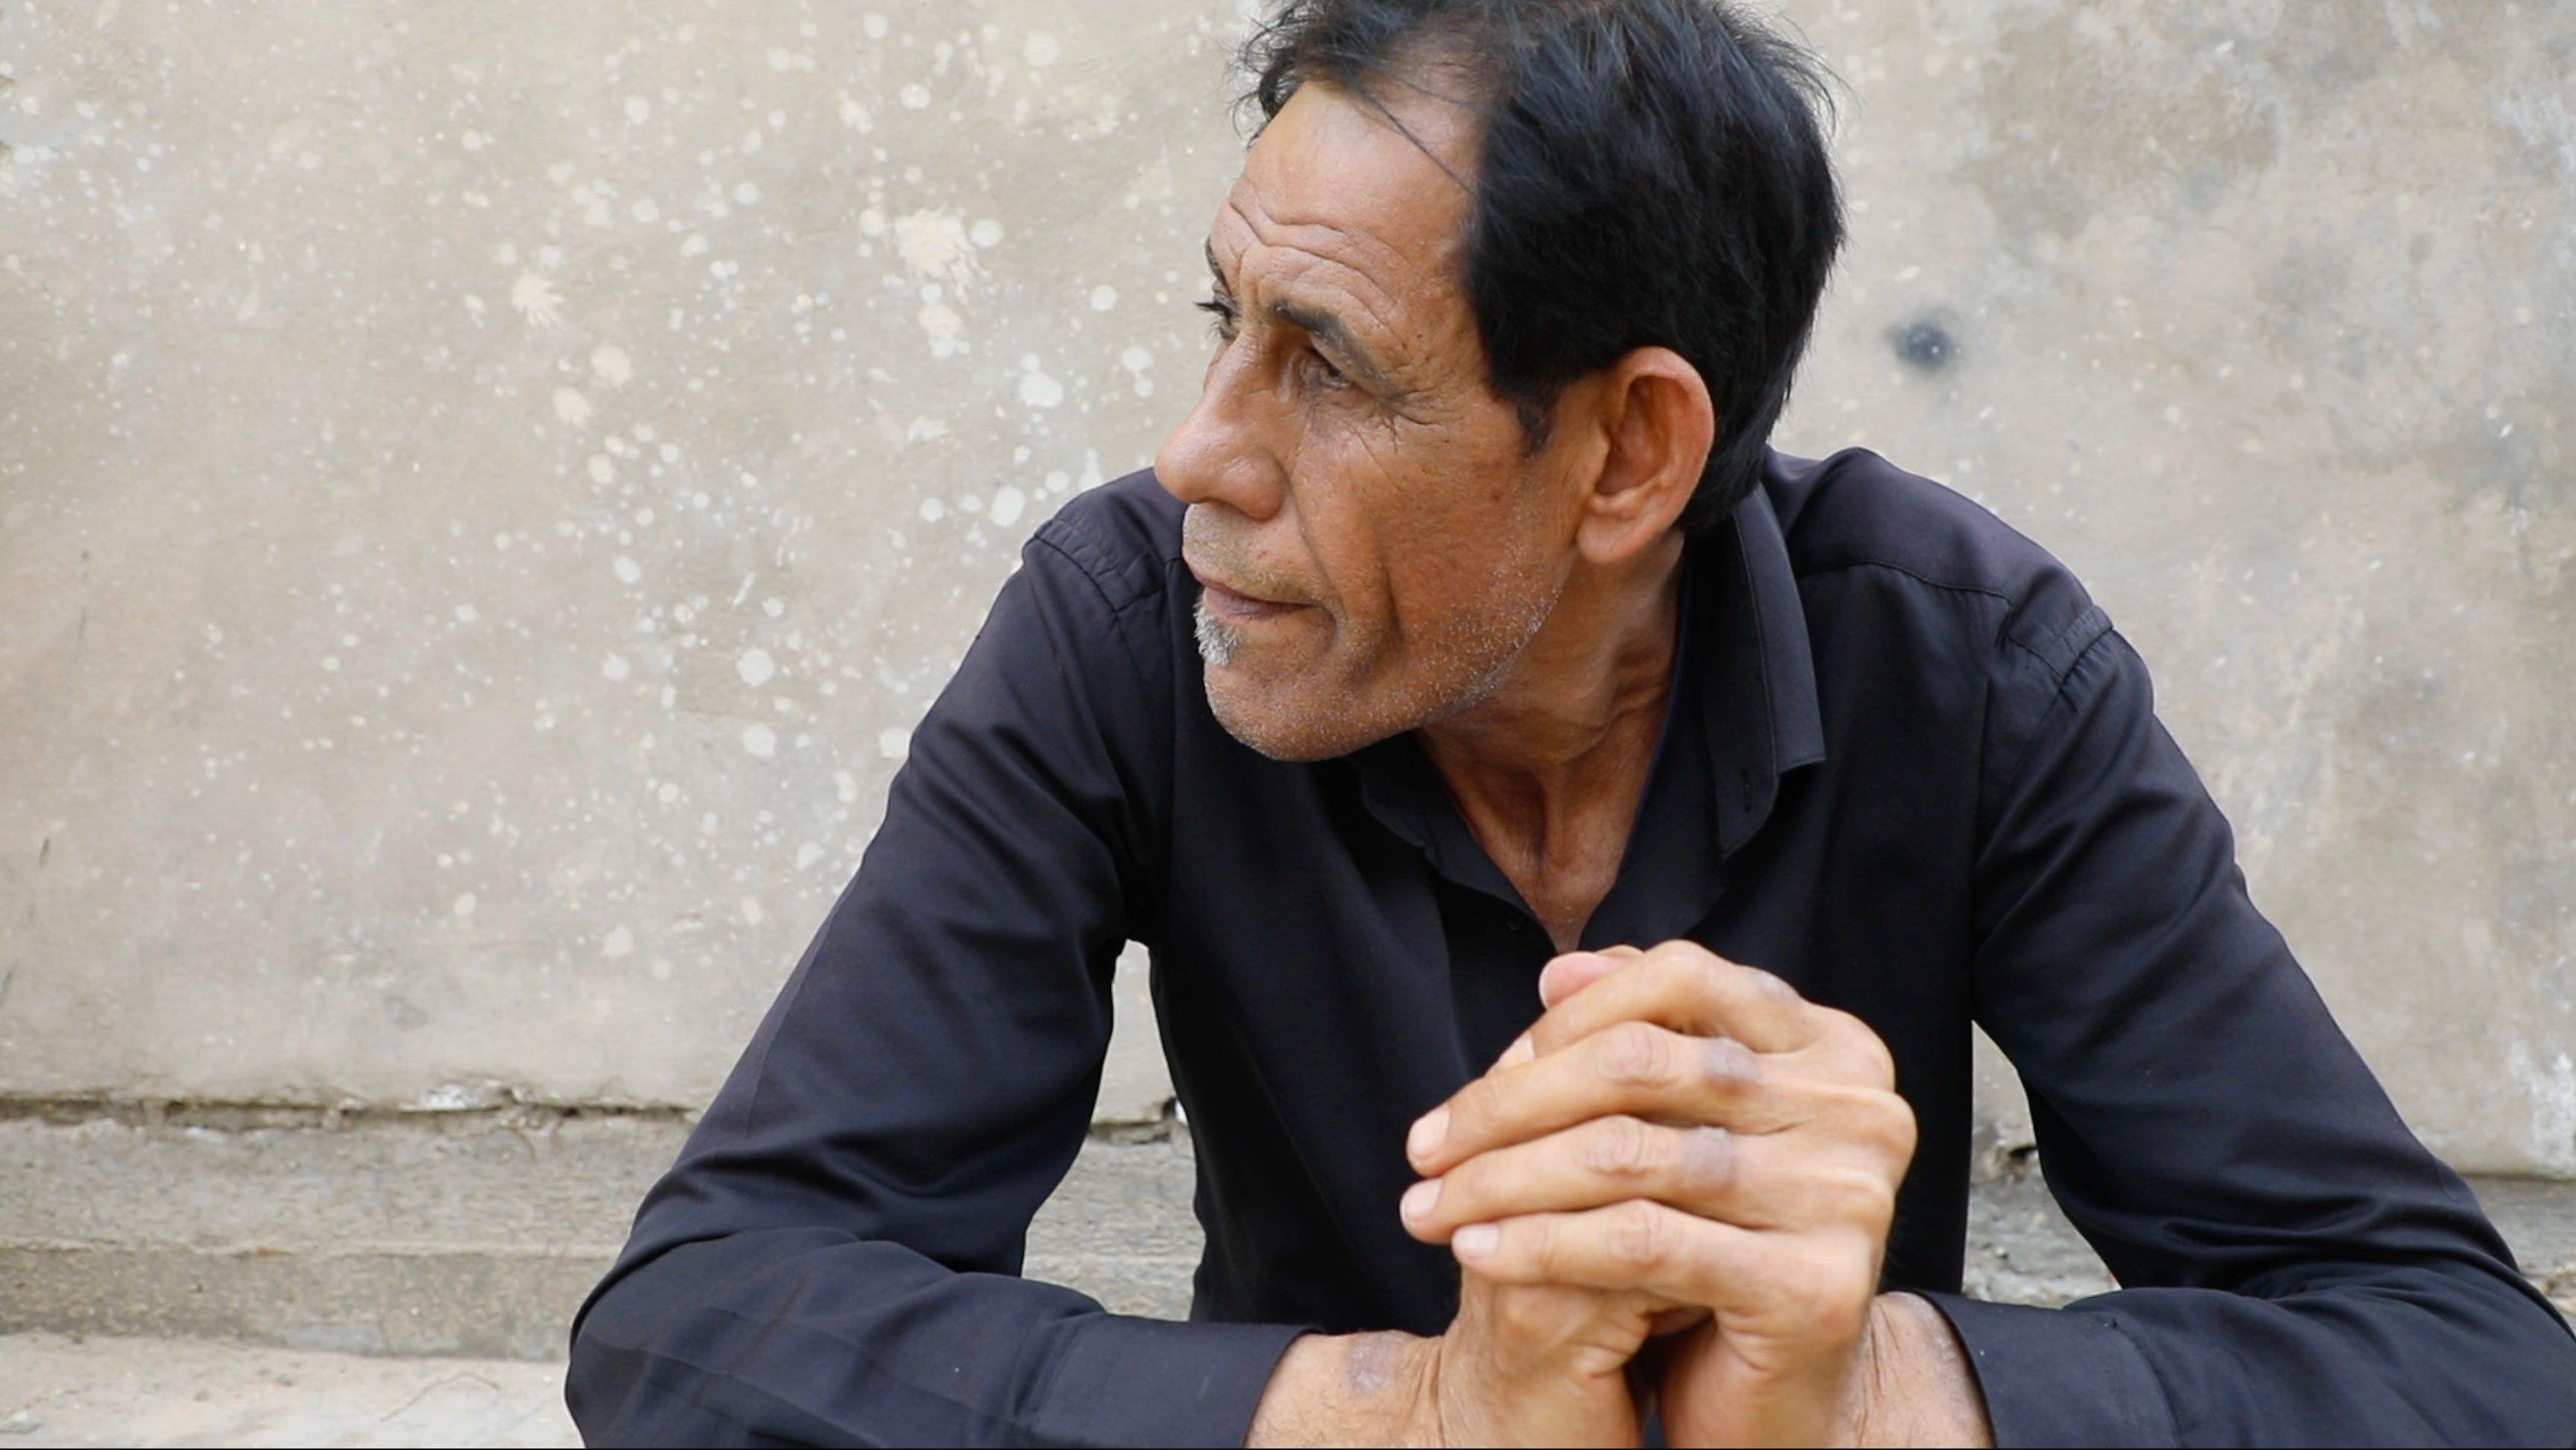 طالب المجلي، عراقي روى تعرضه للتعذيب من قبل القوات الأمريكية أثناء احتجازه في سجن أبو غريب في نوفمبر/تشرين الثاني 2003، في منزله في بغداد العام 2023. أطلقت الولايات المتحدة سراحه بدون توجيه تهم إليه في مارس/آذار 2005.